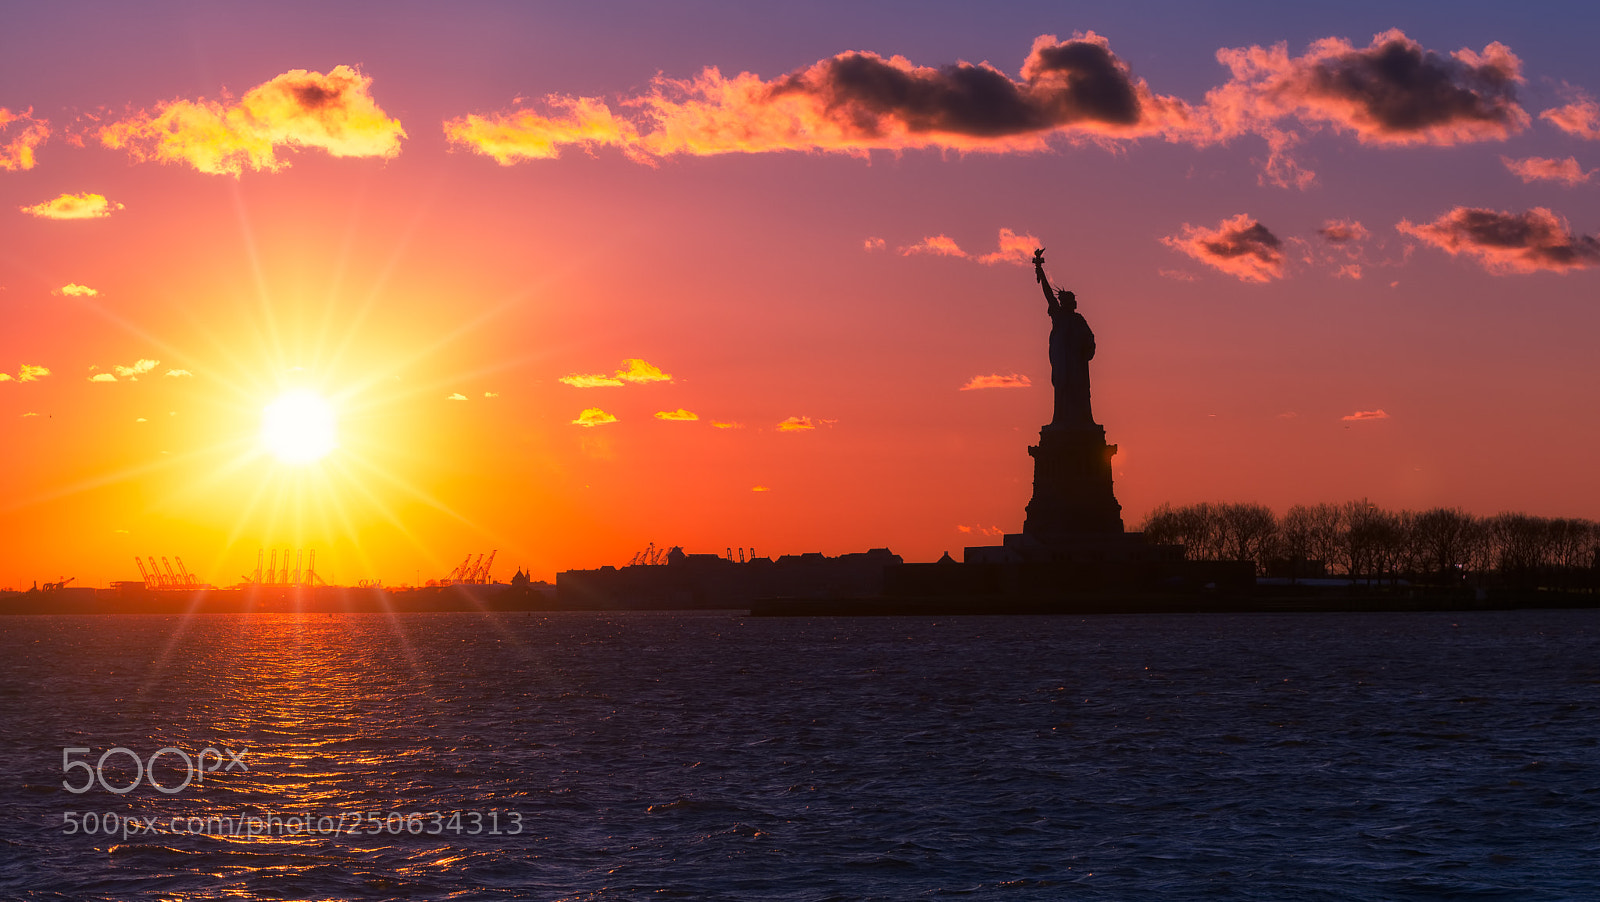 Nikon D7100 sample photo. Liberty sunset photography